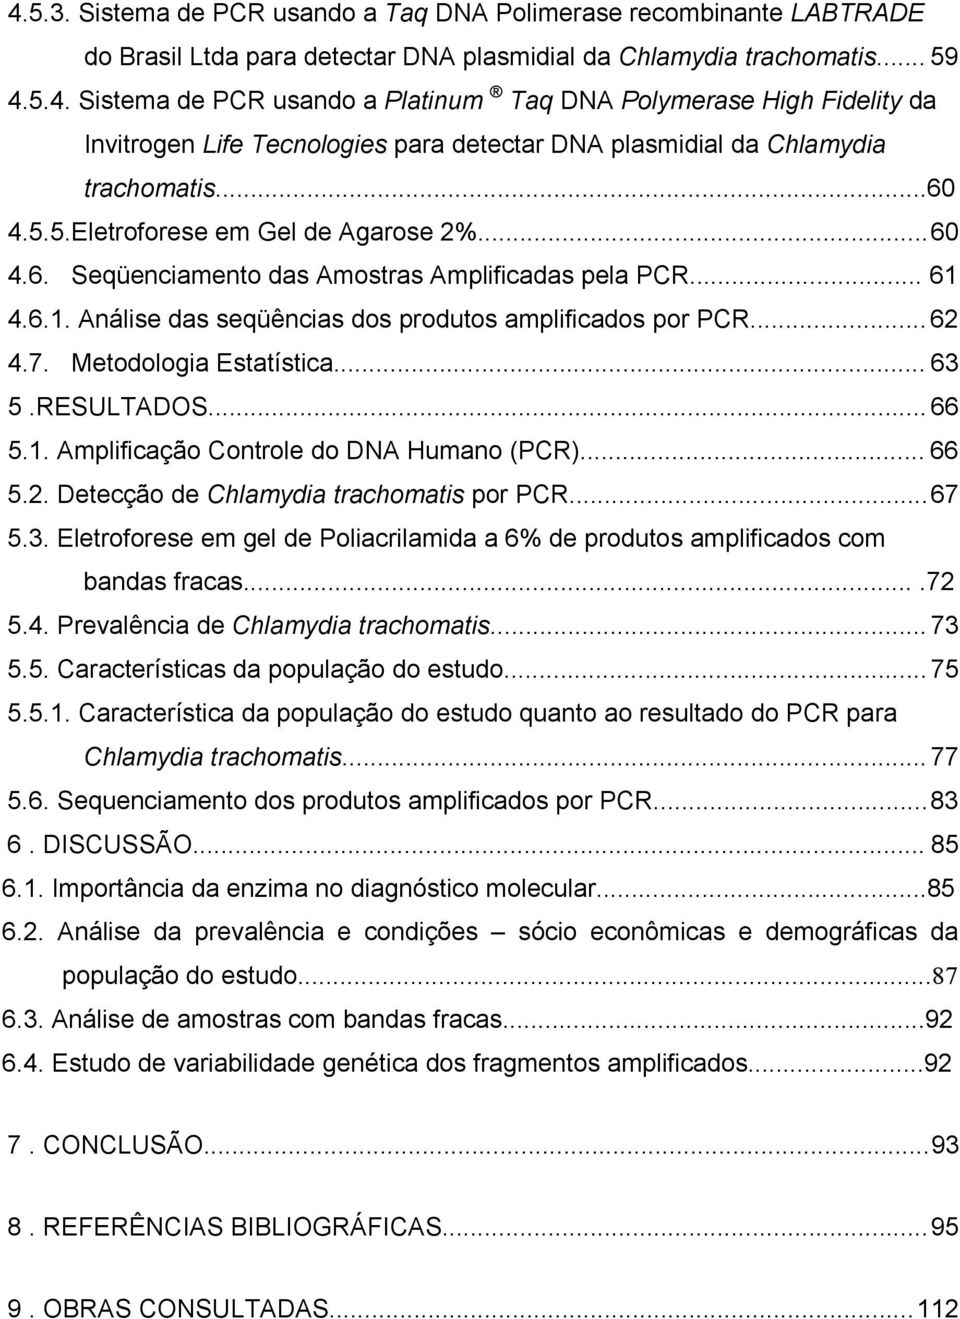 Metodologia Estatística... 63 5.RESULTADOS... 66 5.1. Amplificação Controle do DNA Humano (PCR)... 66 5.2. Detecção de Chlamydia trachomatis por PCR... 67 5.3. Eletroforese em gel de Poliacrilamida a 6% de produtos amplificados com bandas fracas.